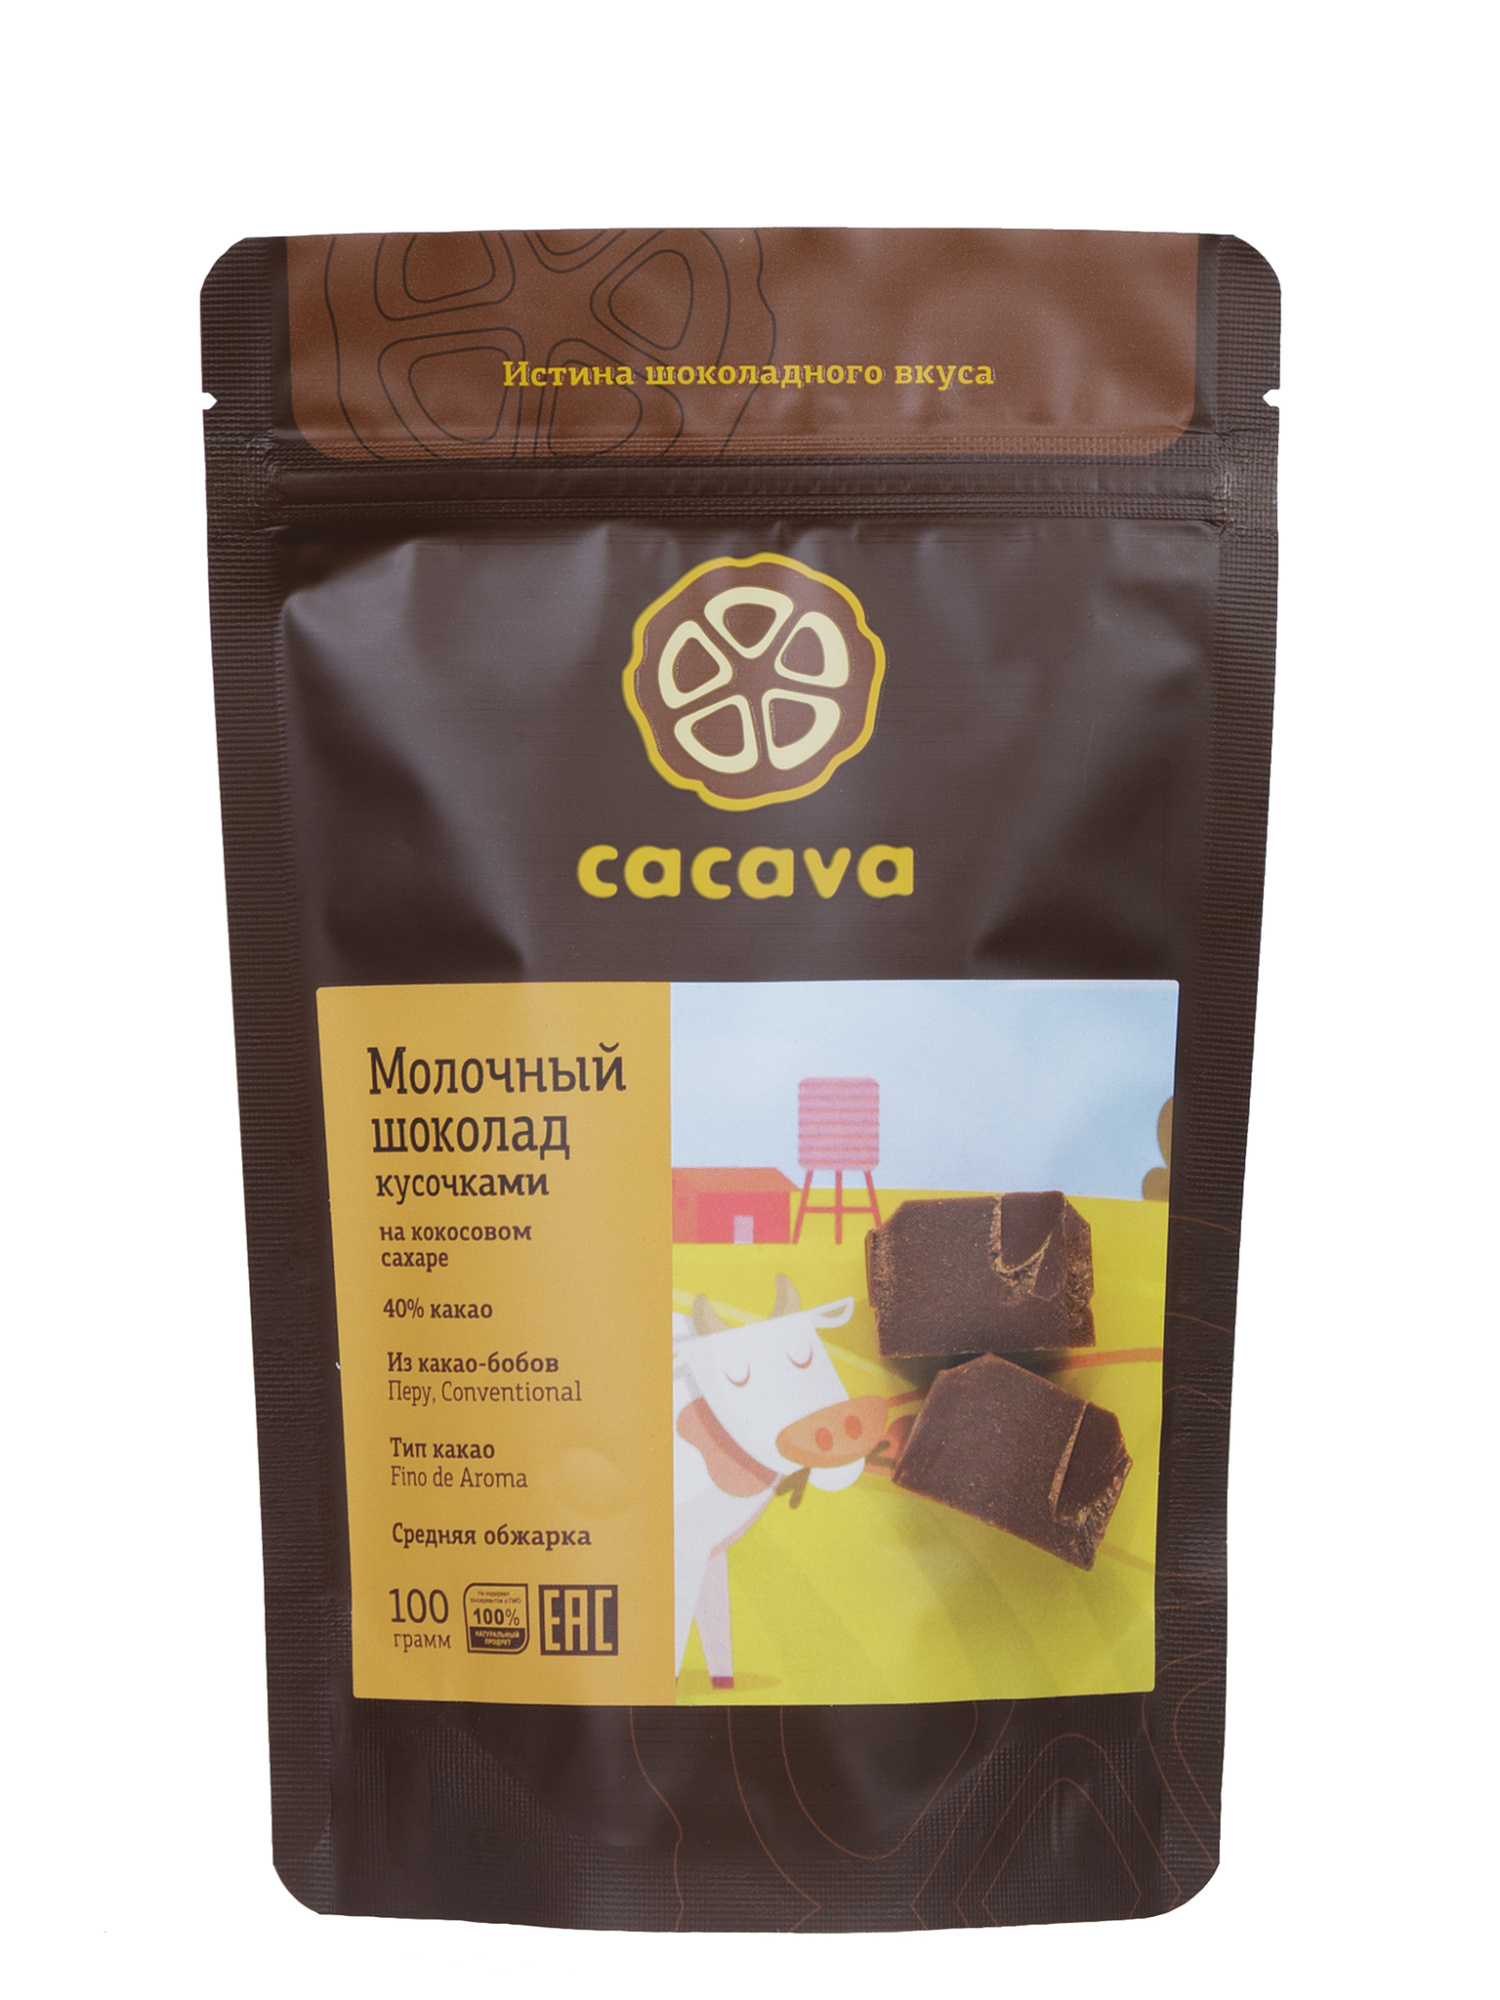 Молочный шоколад 40 % какао, на кокосовом сахаре (Перу) 100гр. купить